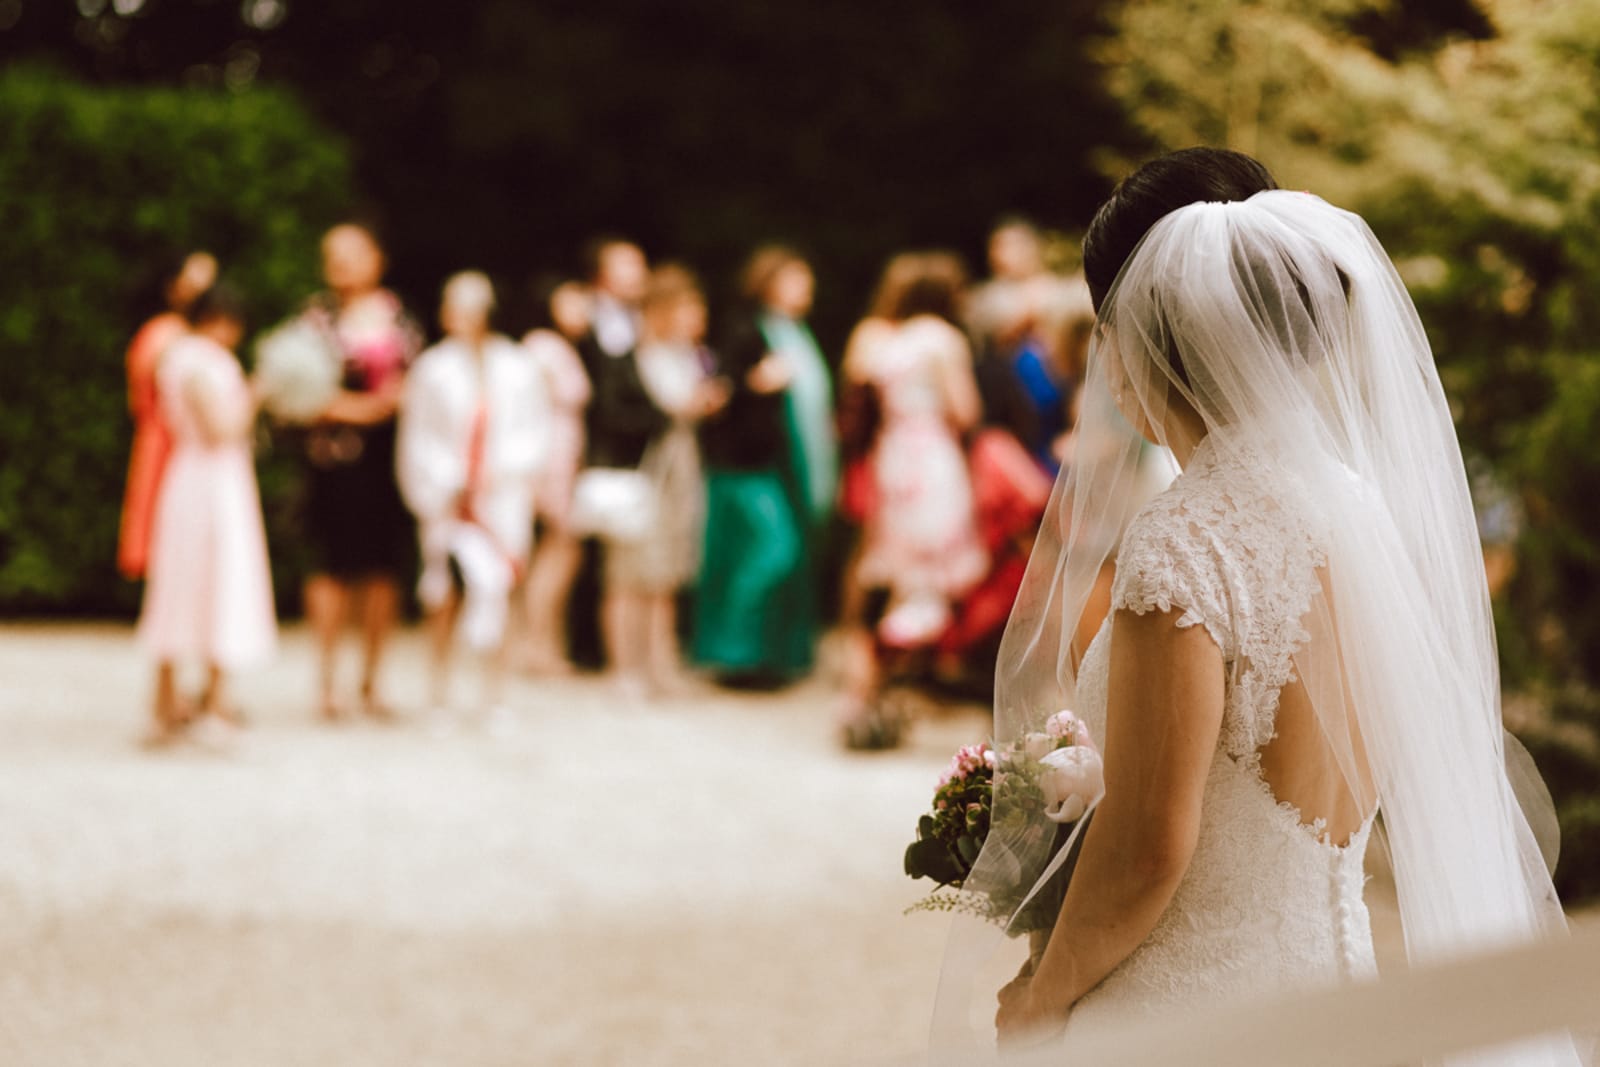 South West | Gloucestershire | Tetbury | Spring | Cultural | DIY | Outdoor | Pink | Brights | Outdoor venue | Real Wedding | Boy Called Ben Photography #Bridebook #RealWedding #WeddingIdeas Bridebook.co.uk 